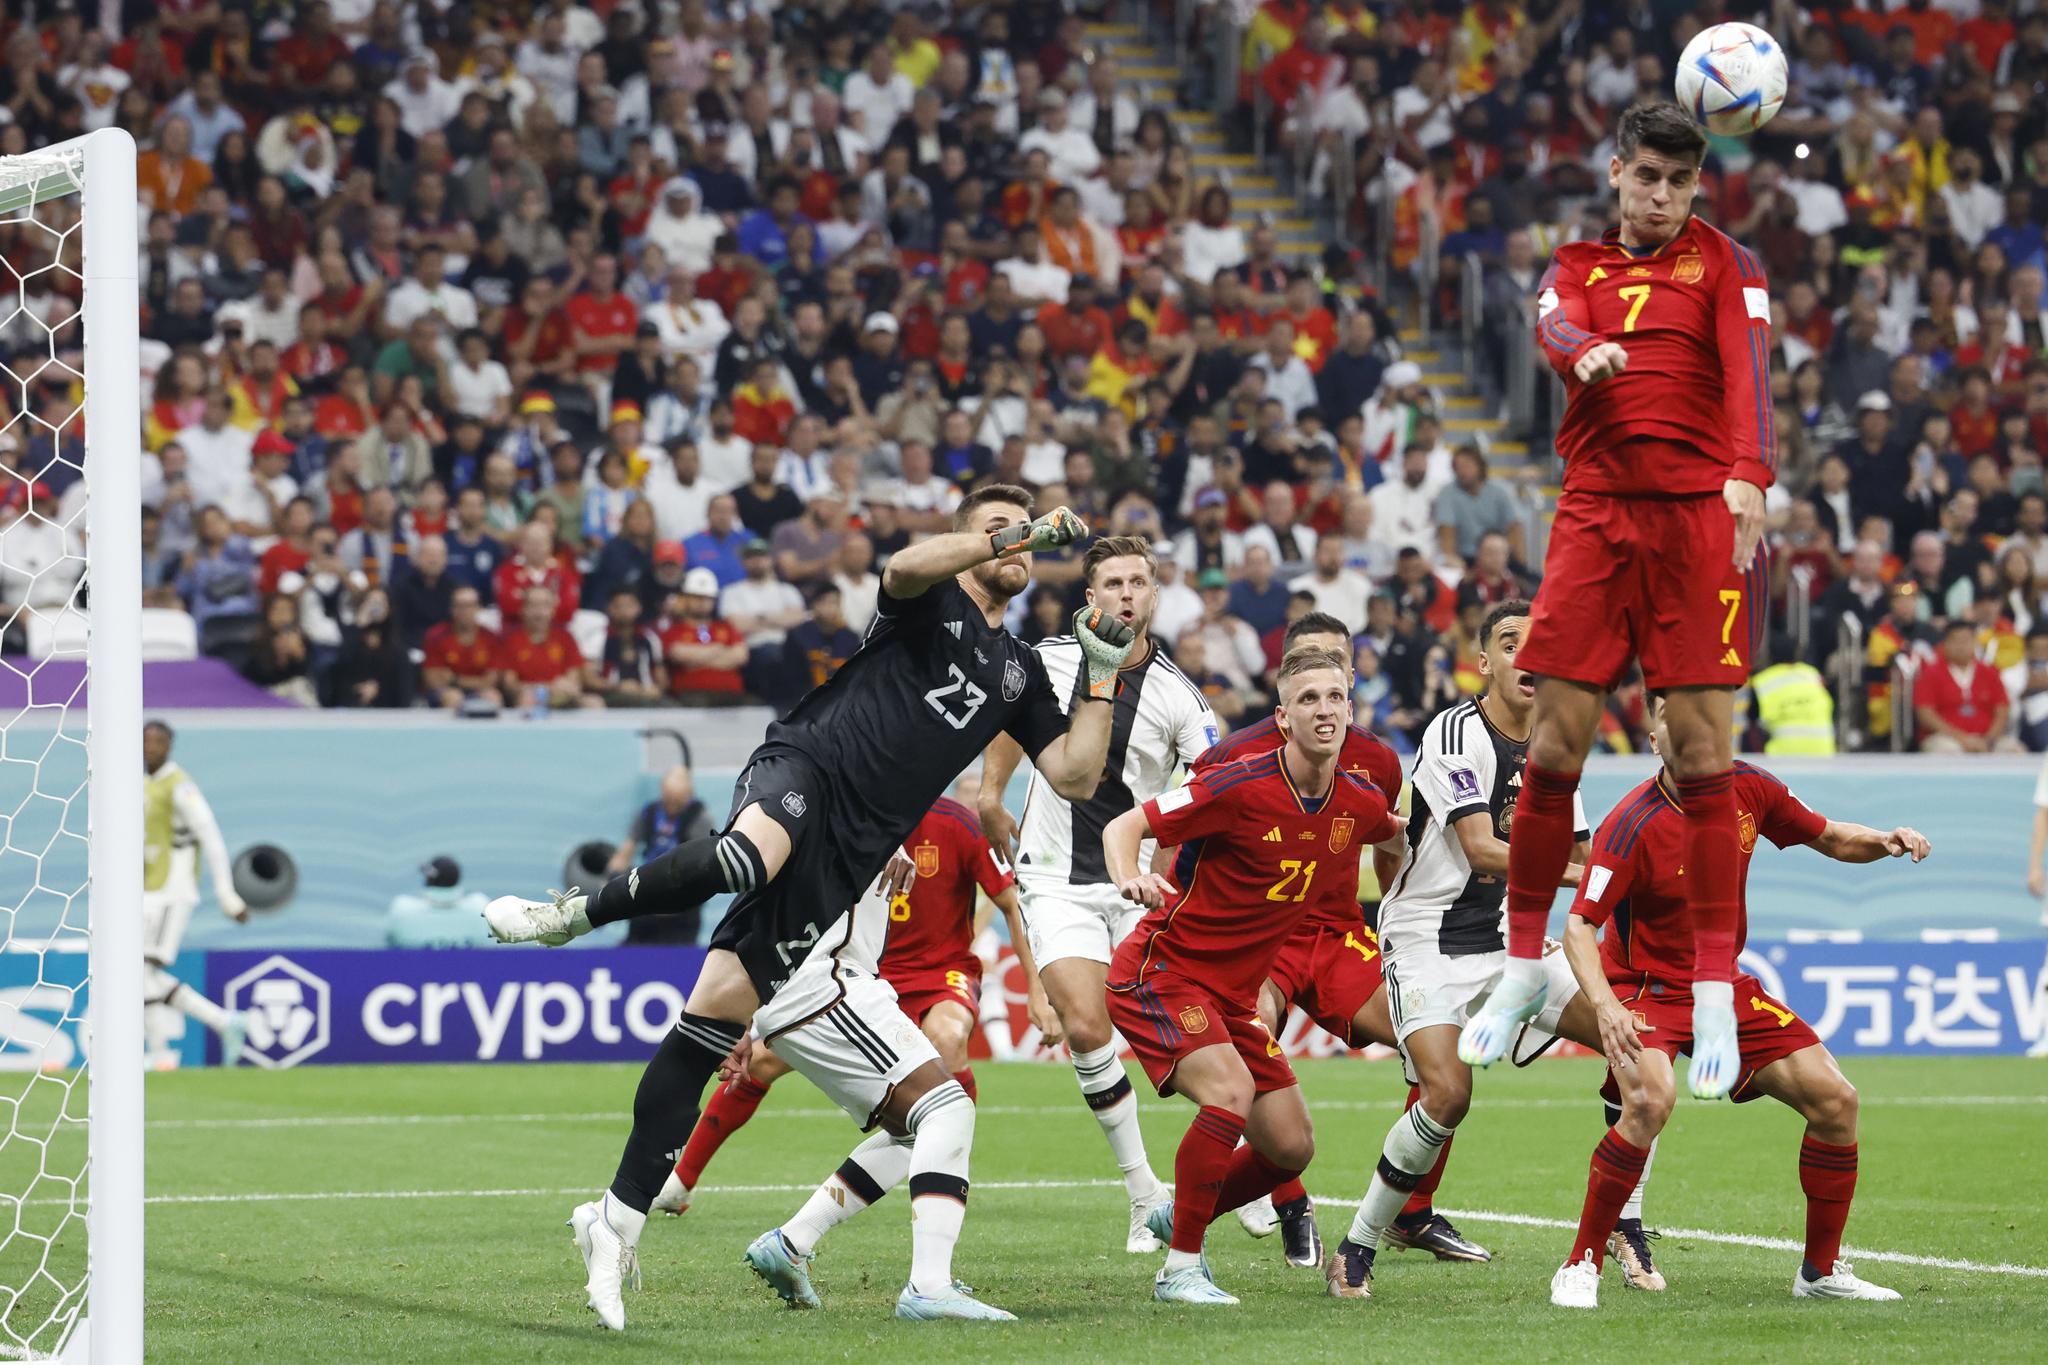 GR7272. AL KHOR (CATAR), 27/11/2022.- Álvaro lt;HIT gt;Morata lt;/HIT gt; (arriba) de España salta por un balón hoy, en un partido de la fase de grupos del Mundial de Fútbol Qatar 2022 entre España y Alemania en el estadio Al Bait en Al Khor (Catar). EFE/ Esteban Biba